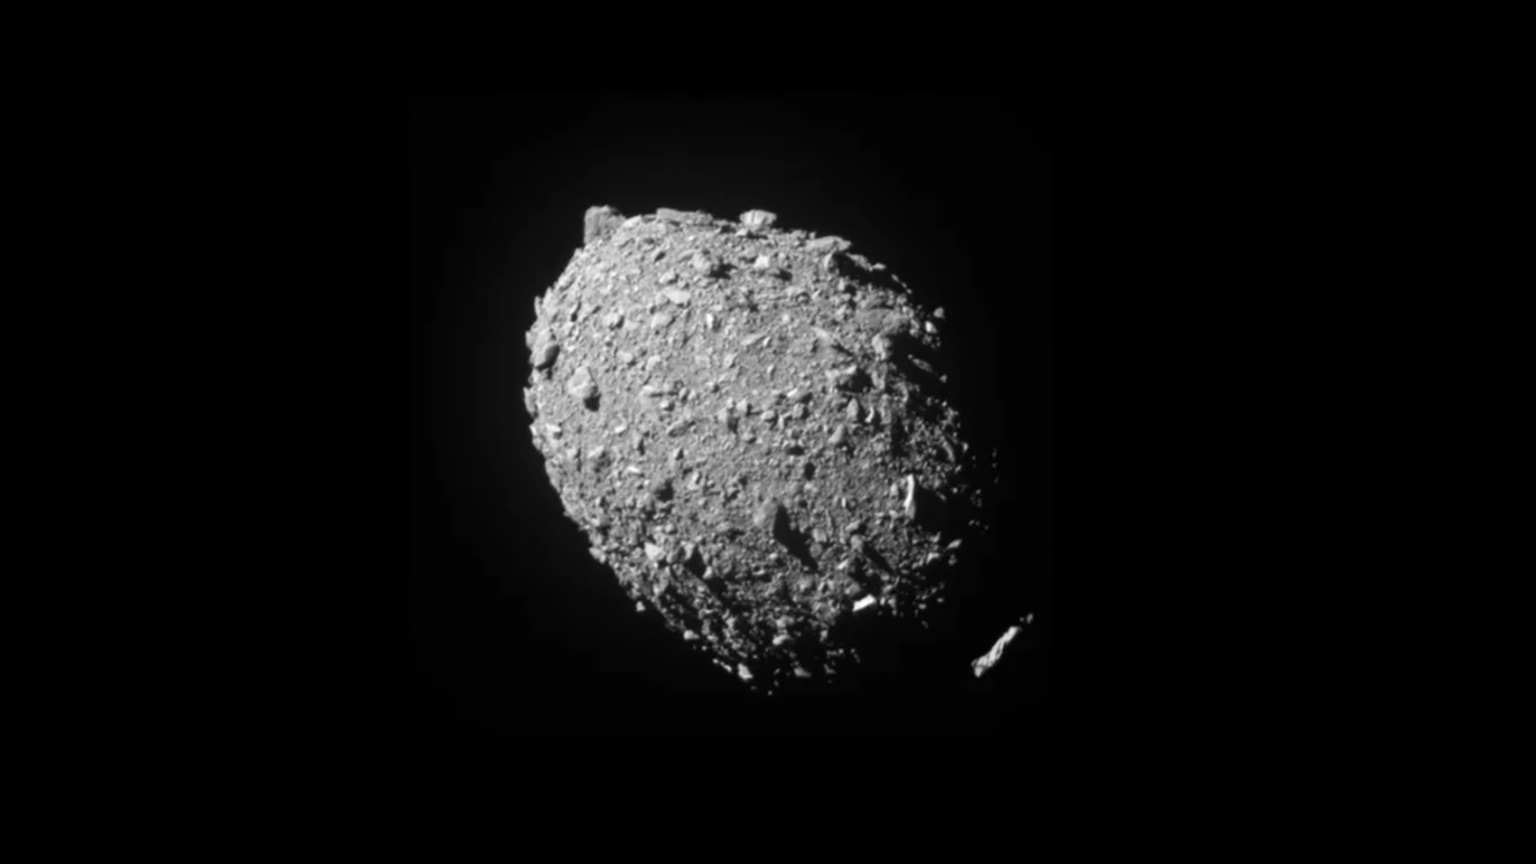 L'orbita e la forma dell'asteroide cambiano dopo l'impatto con il DART, conferma la NASA